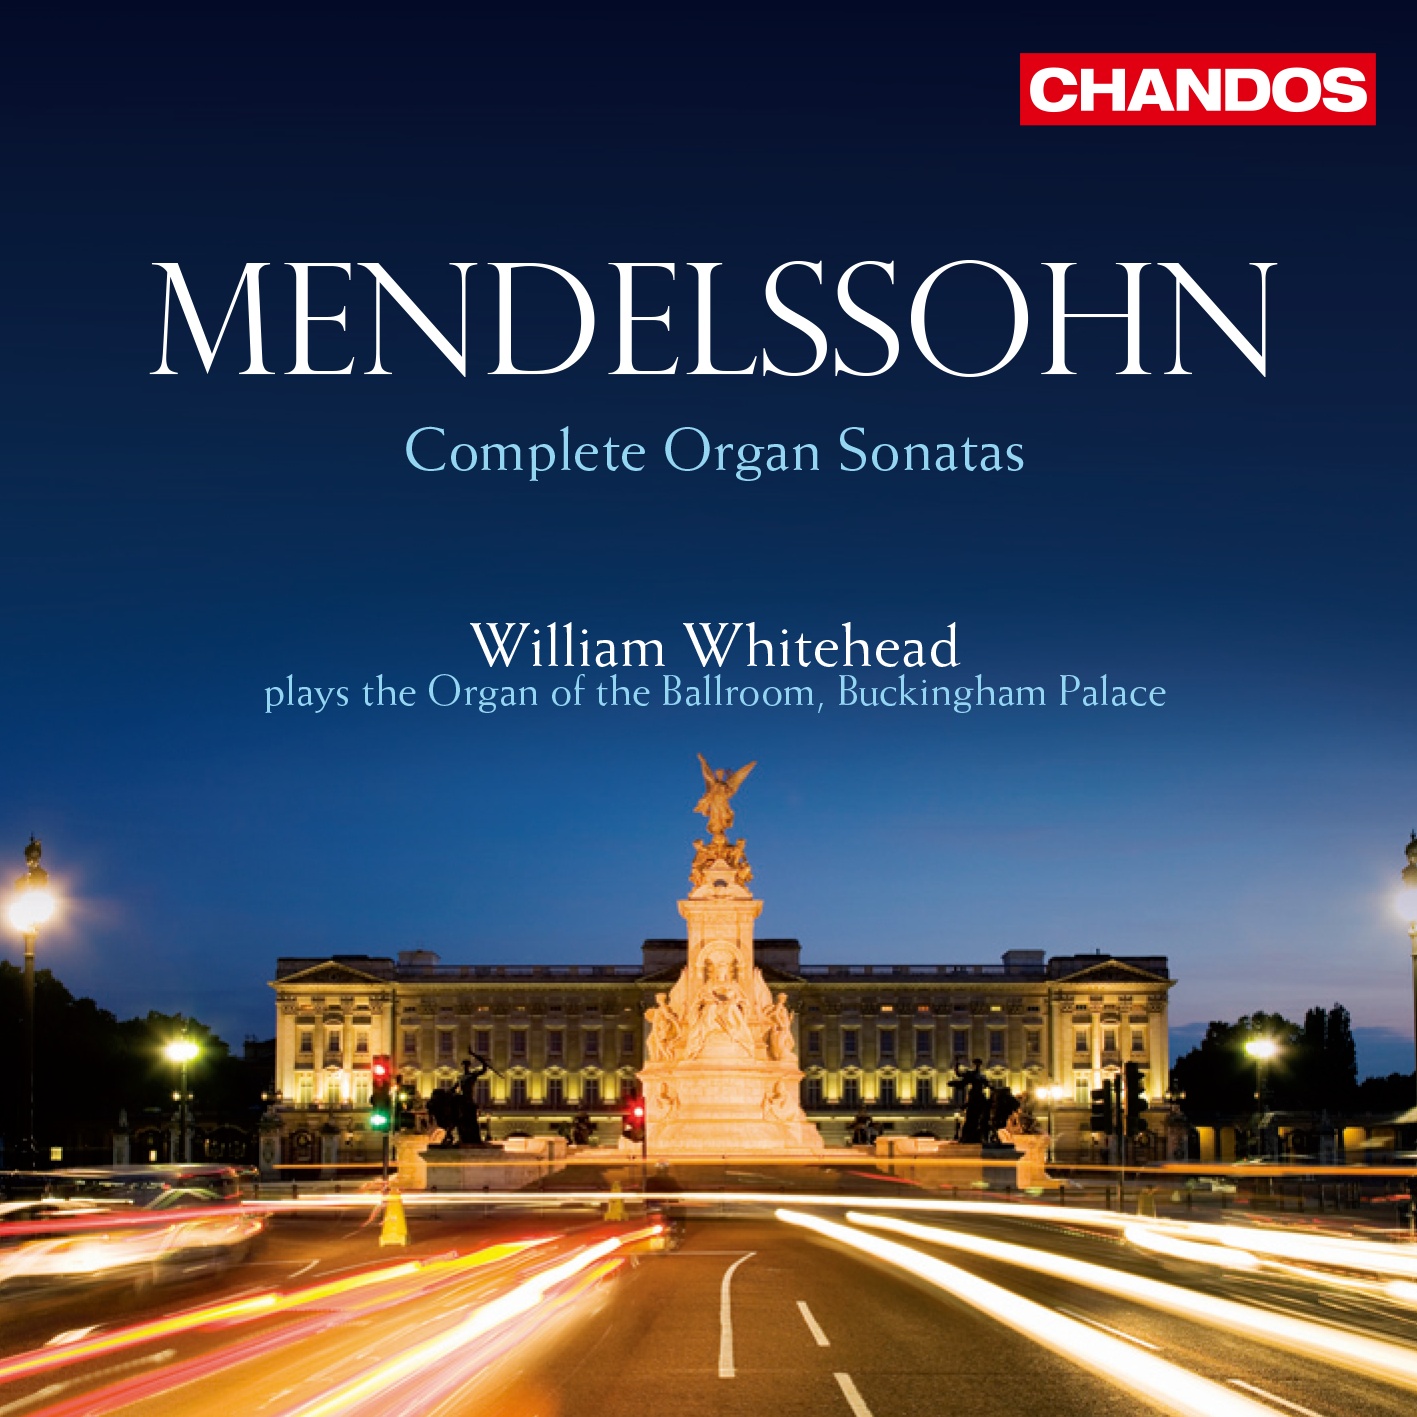 Felix Mendelssohn: Organ Sonata No. 5 in D major, Op. 65/5 - 3. Allegro maestoso